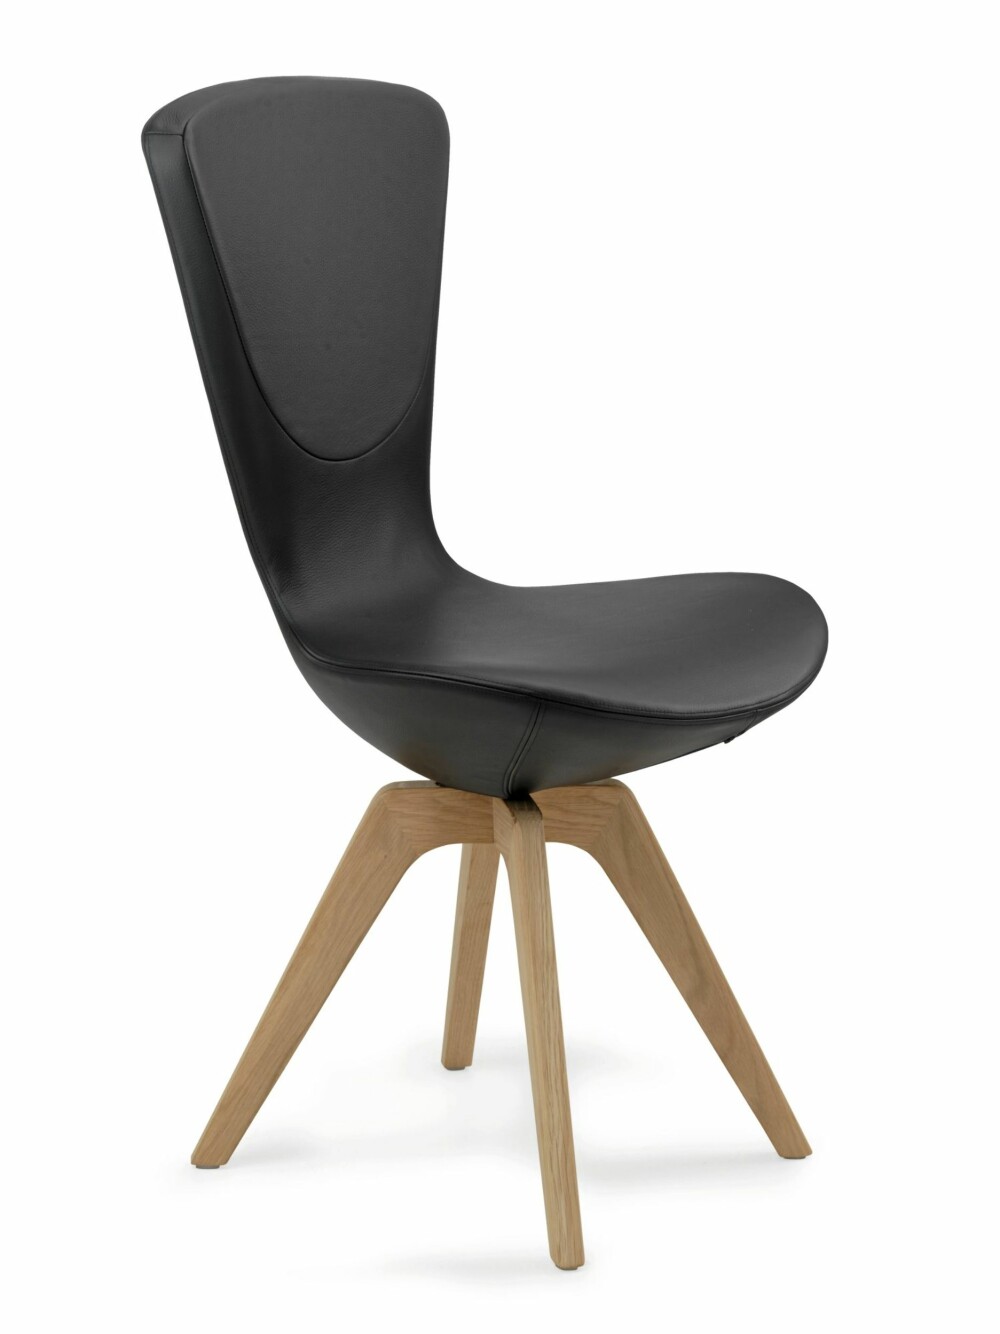 EN STOL FOR FREMTIDEN? Varier Invite er et høyreist stol med en original karakter. Design Olav Eldøy. Pris fra kr 4.900.